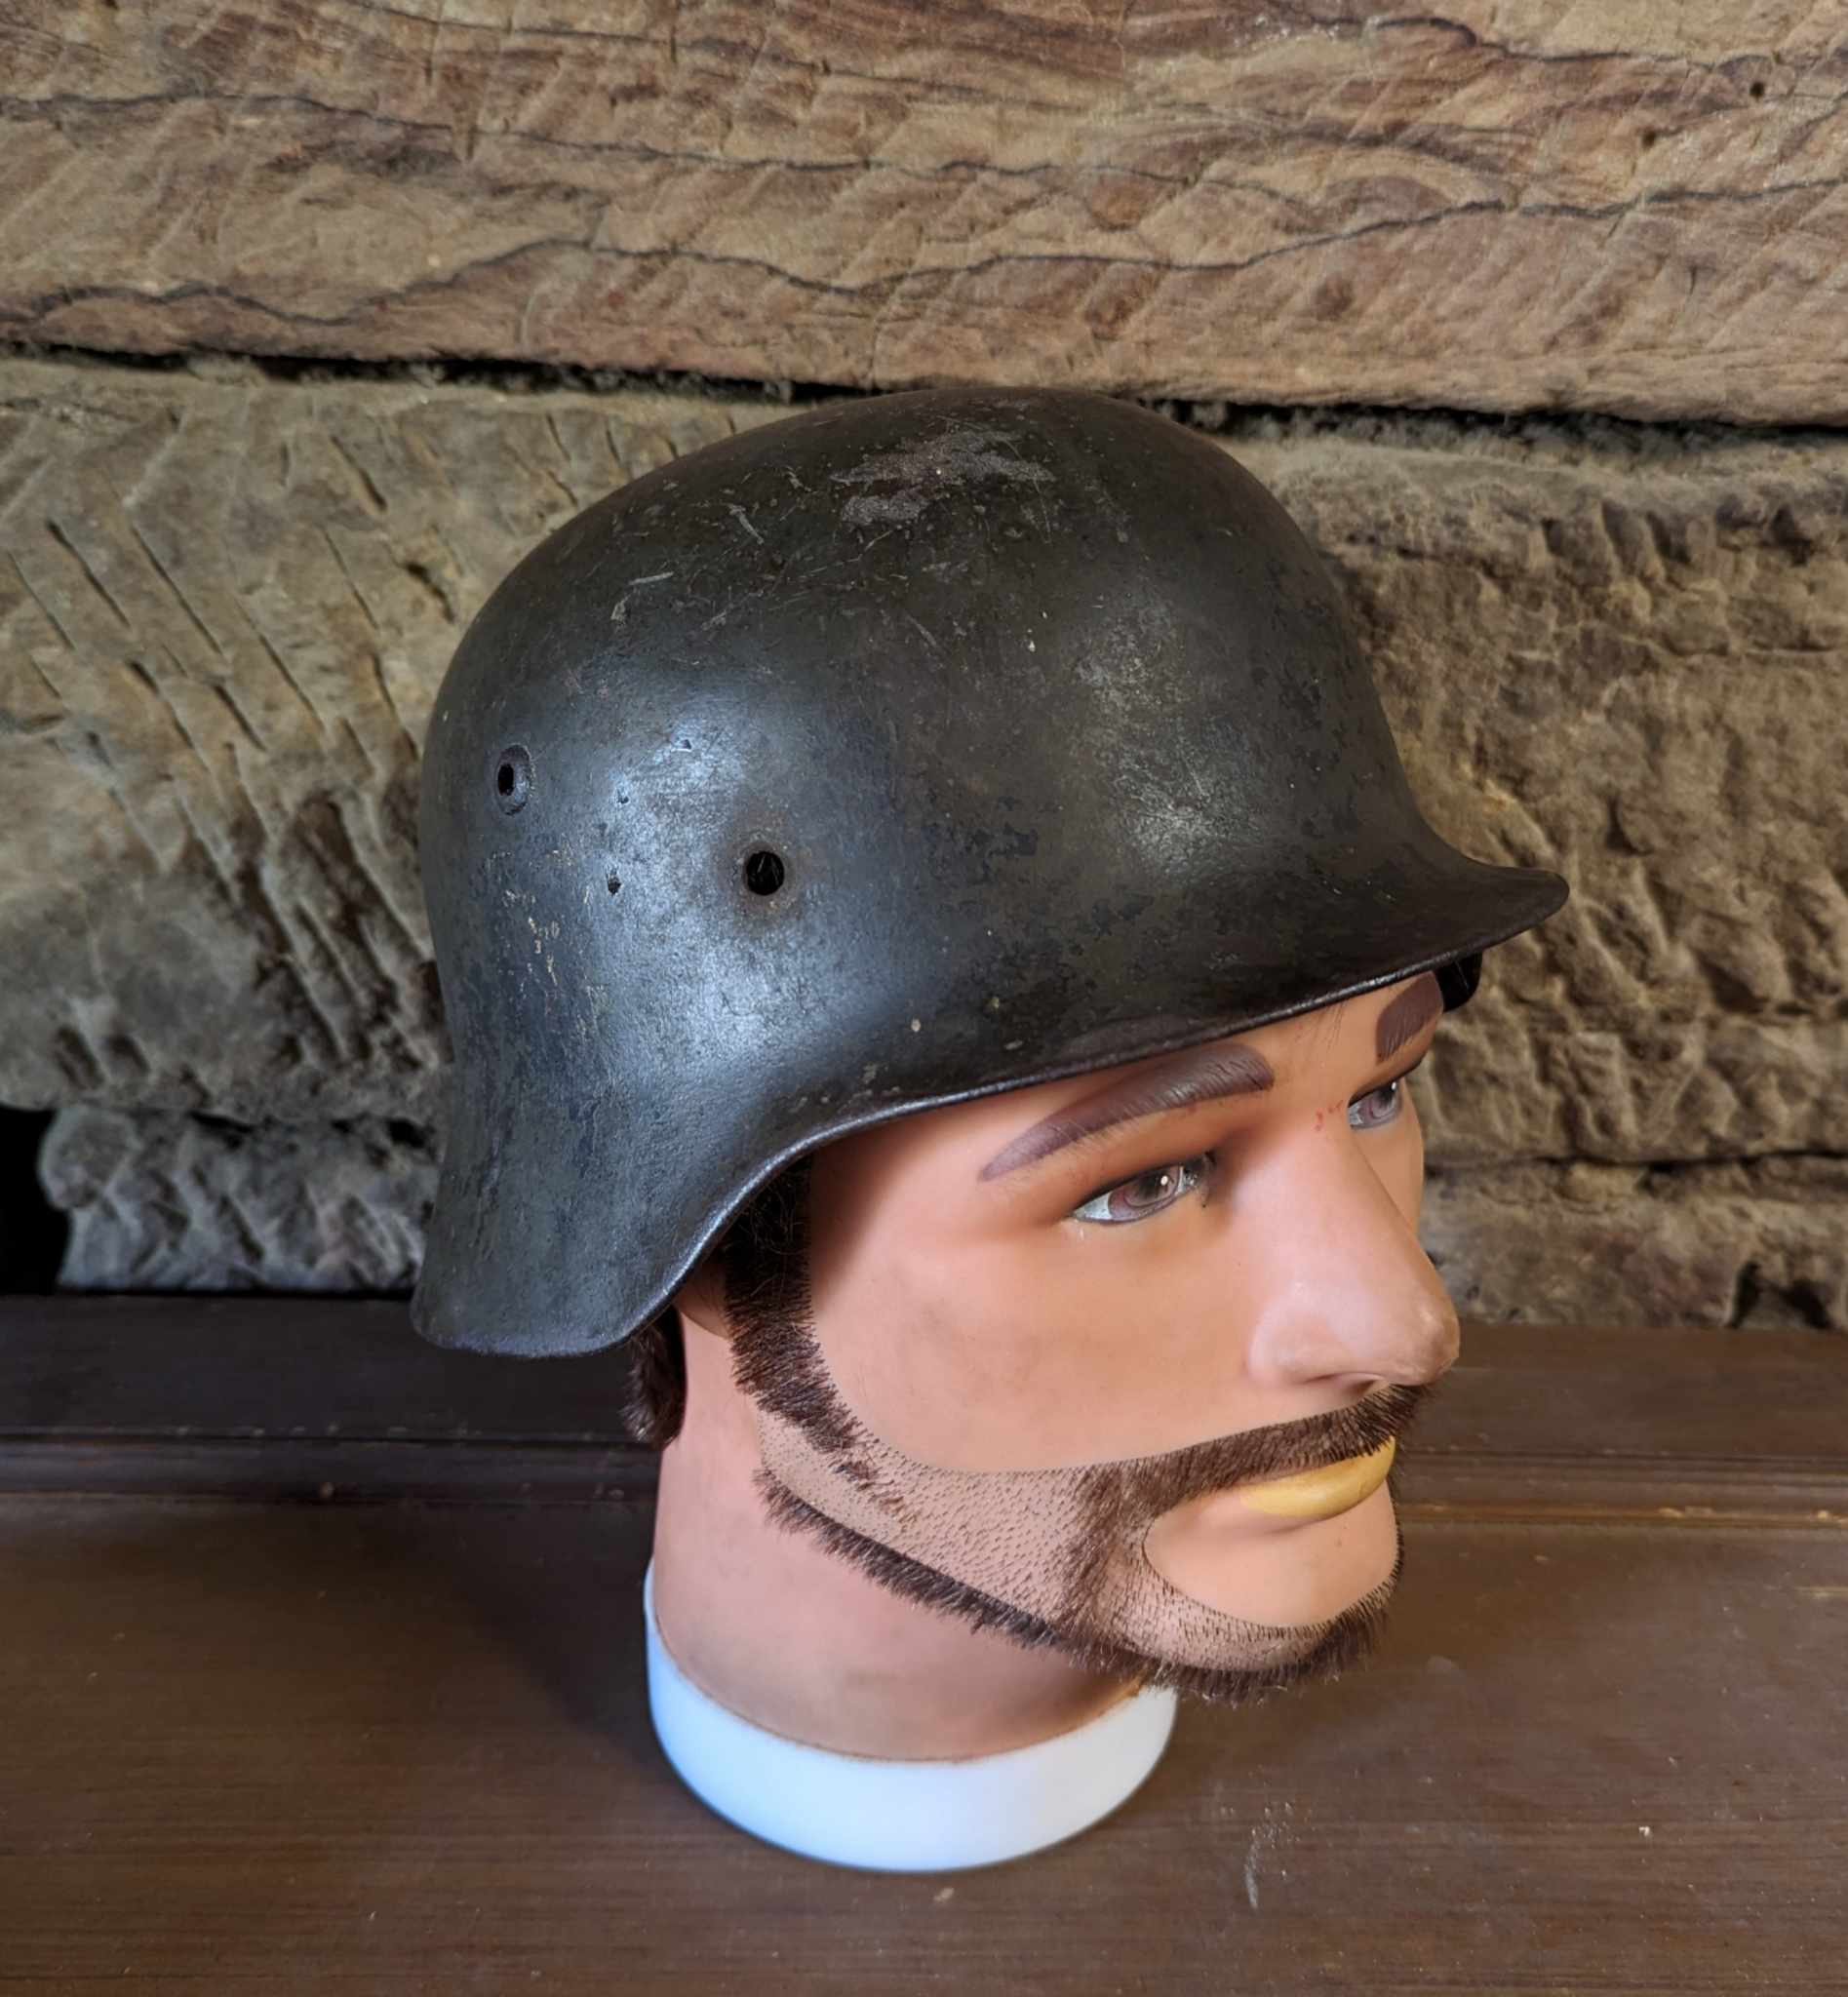 militaria : Coque casque allemand m35 insigne / ww2 German helmet m35